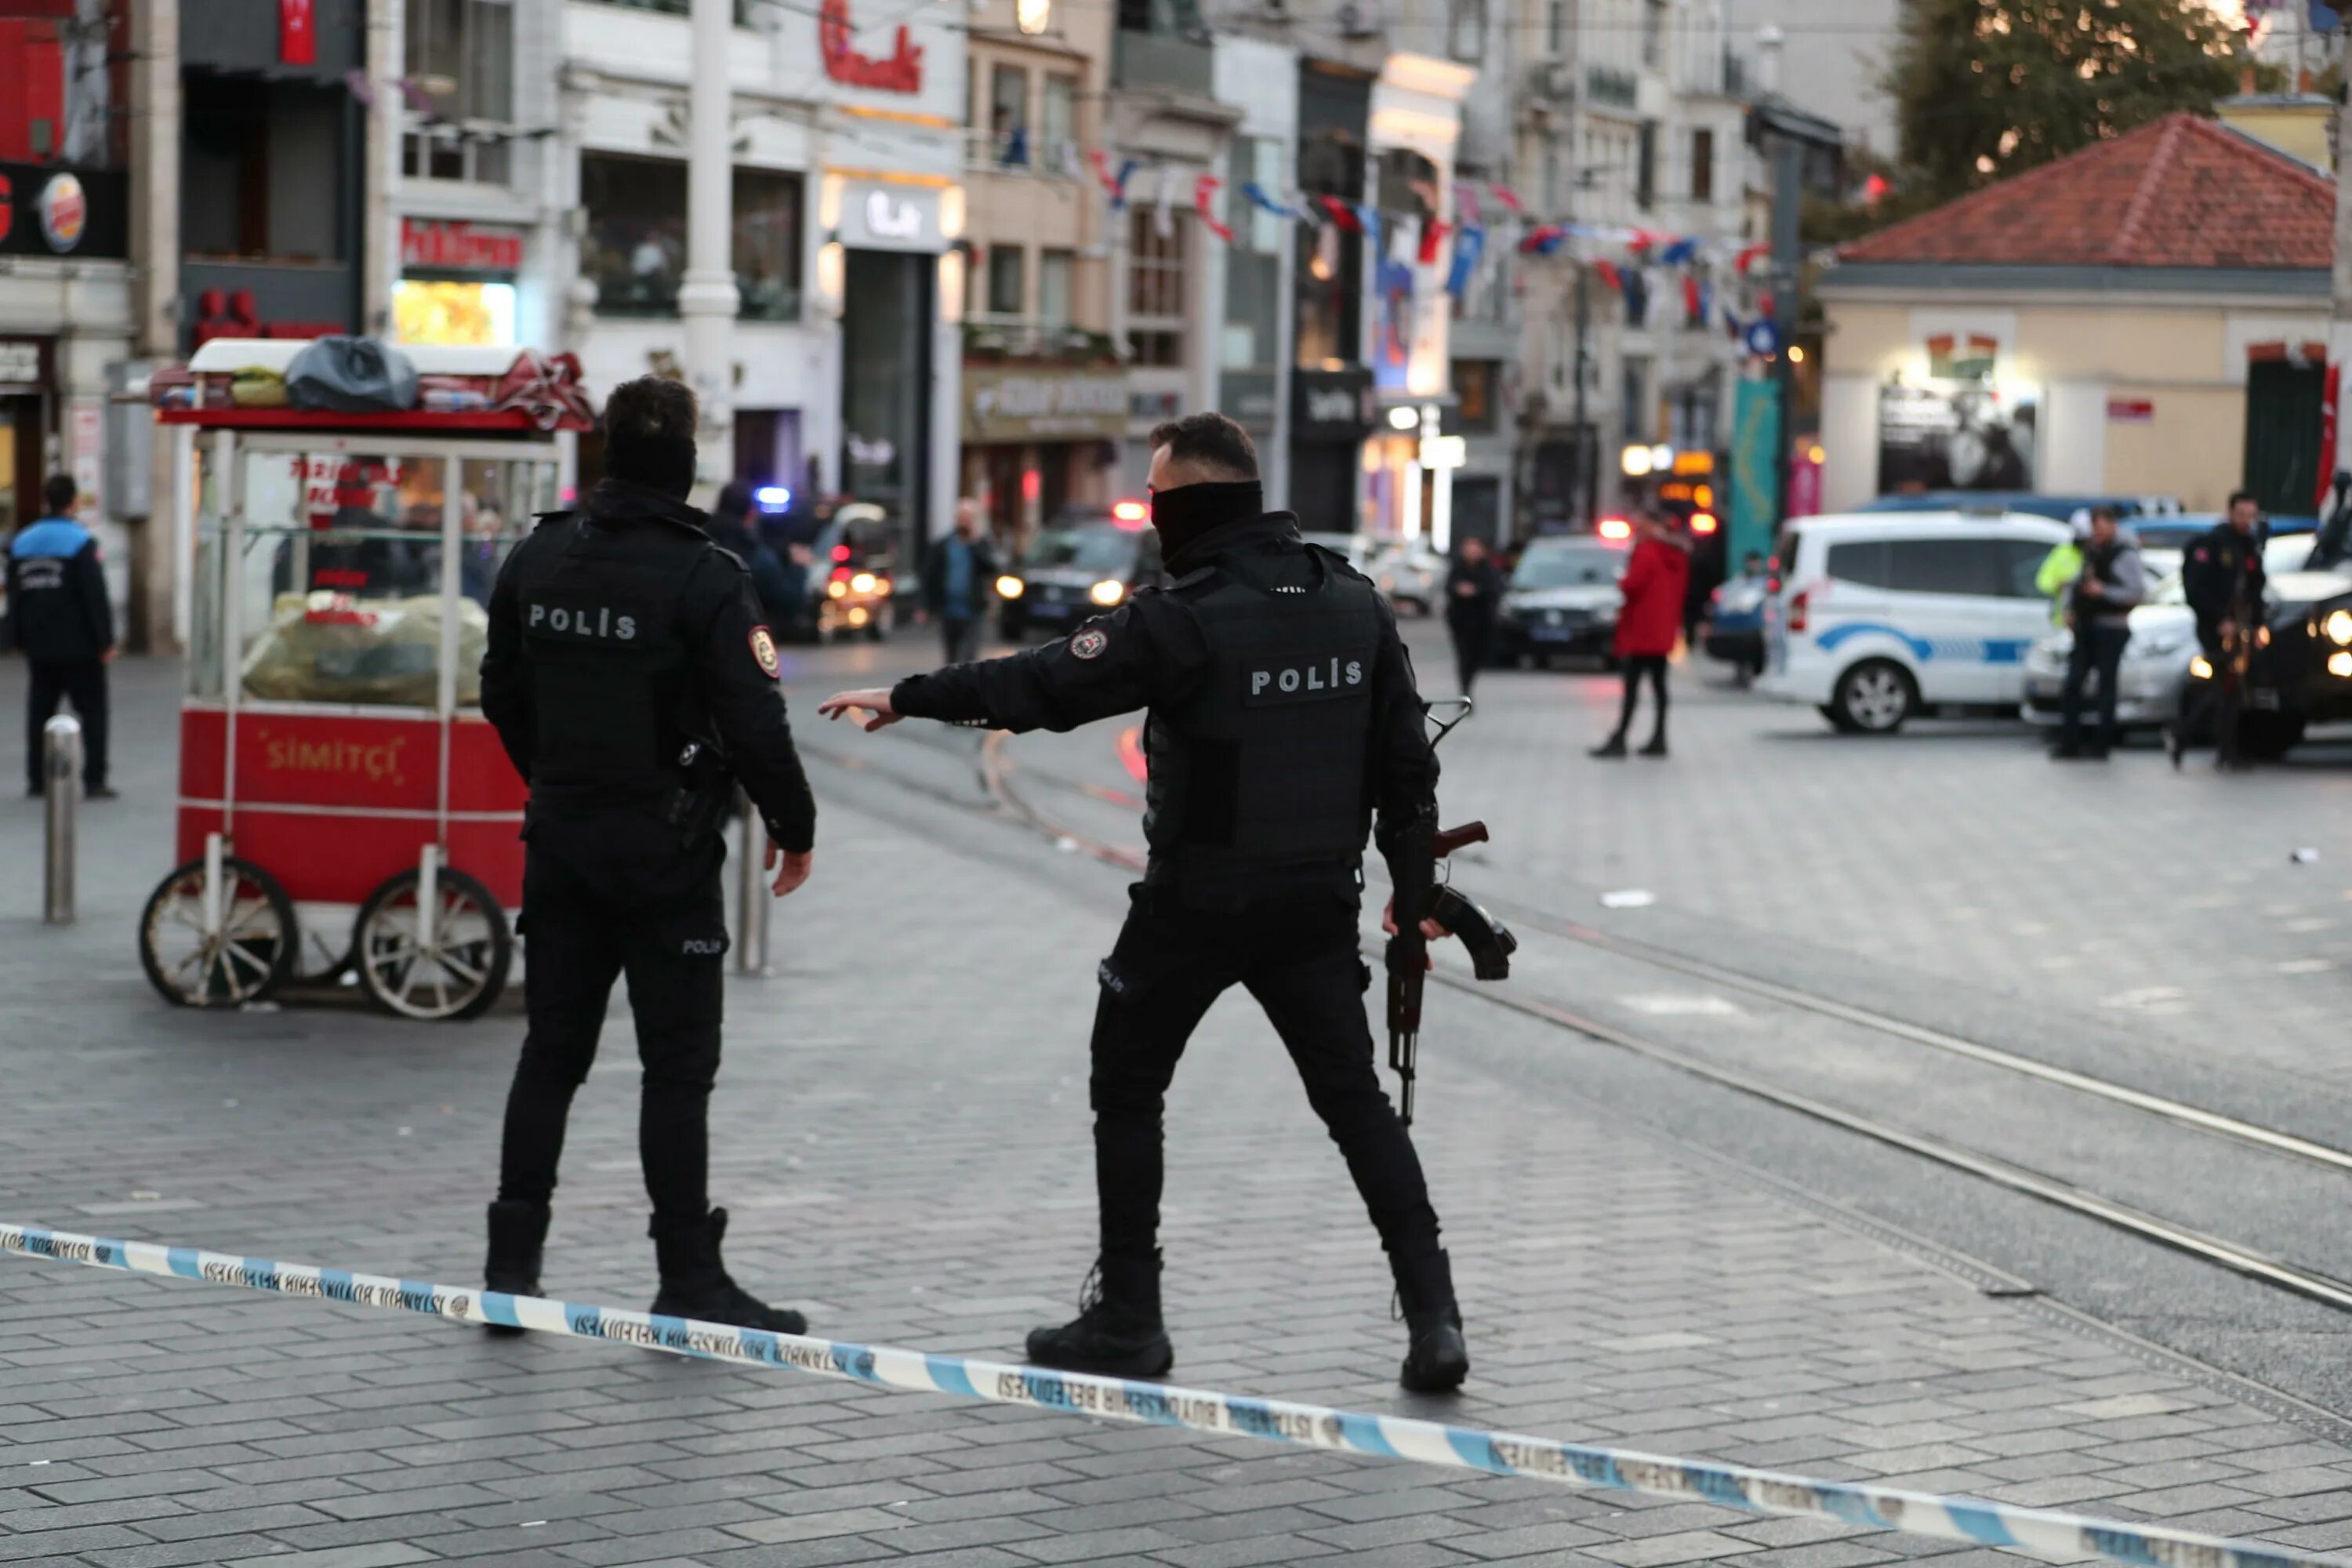 Теракт в Стамбуле на улице Истикляль. Взрыв в центре Стамбула 2022. Терор сегодня